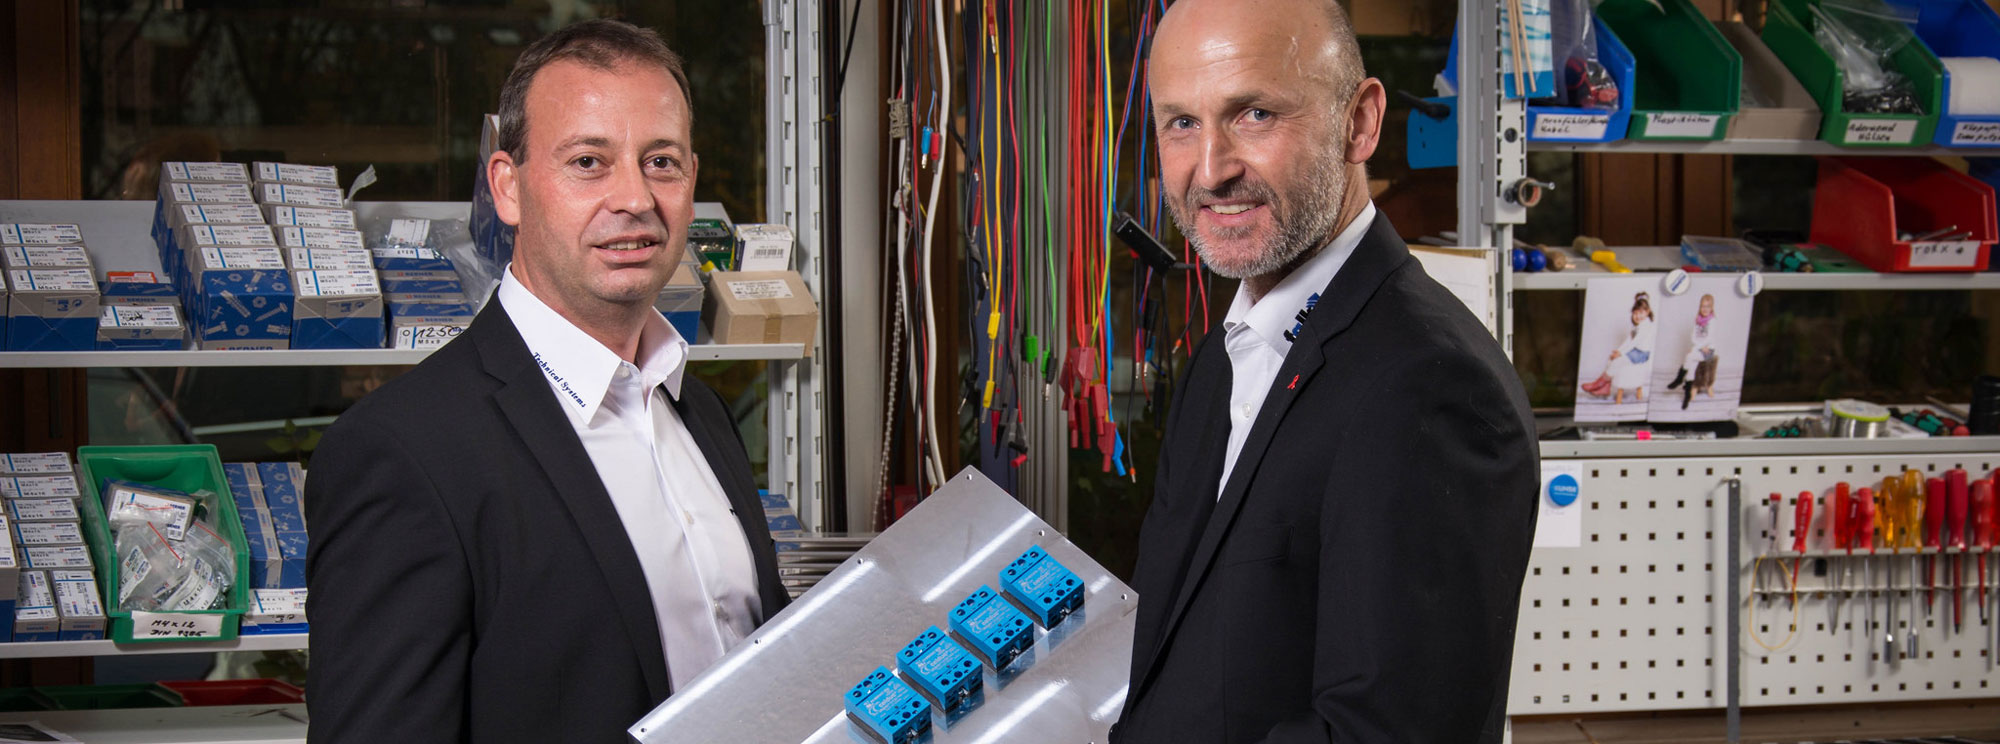 Falk GmbH Technical Systems - die Geschäftsführer Andreas Falk und Heinz-Peter Wolf